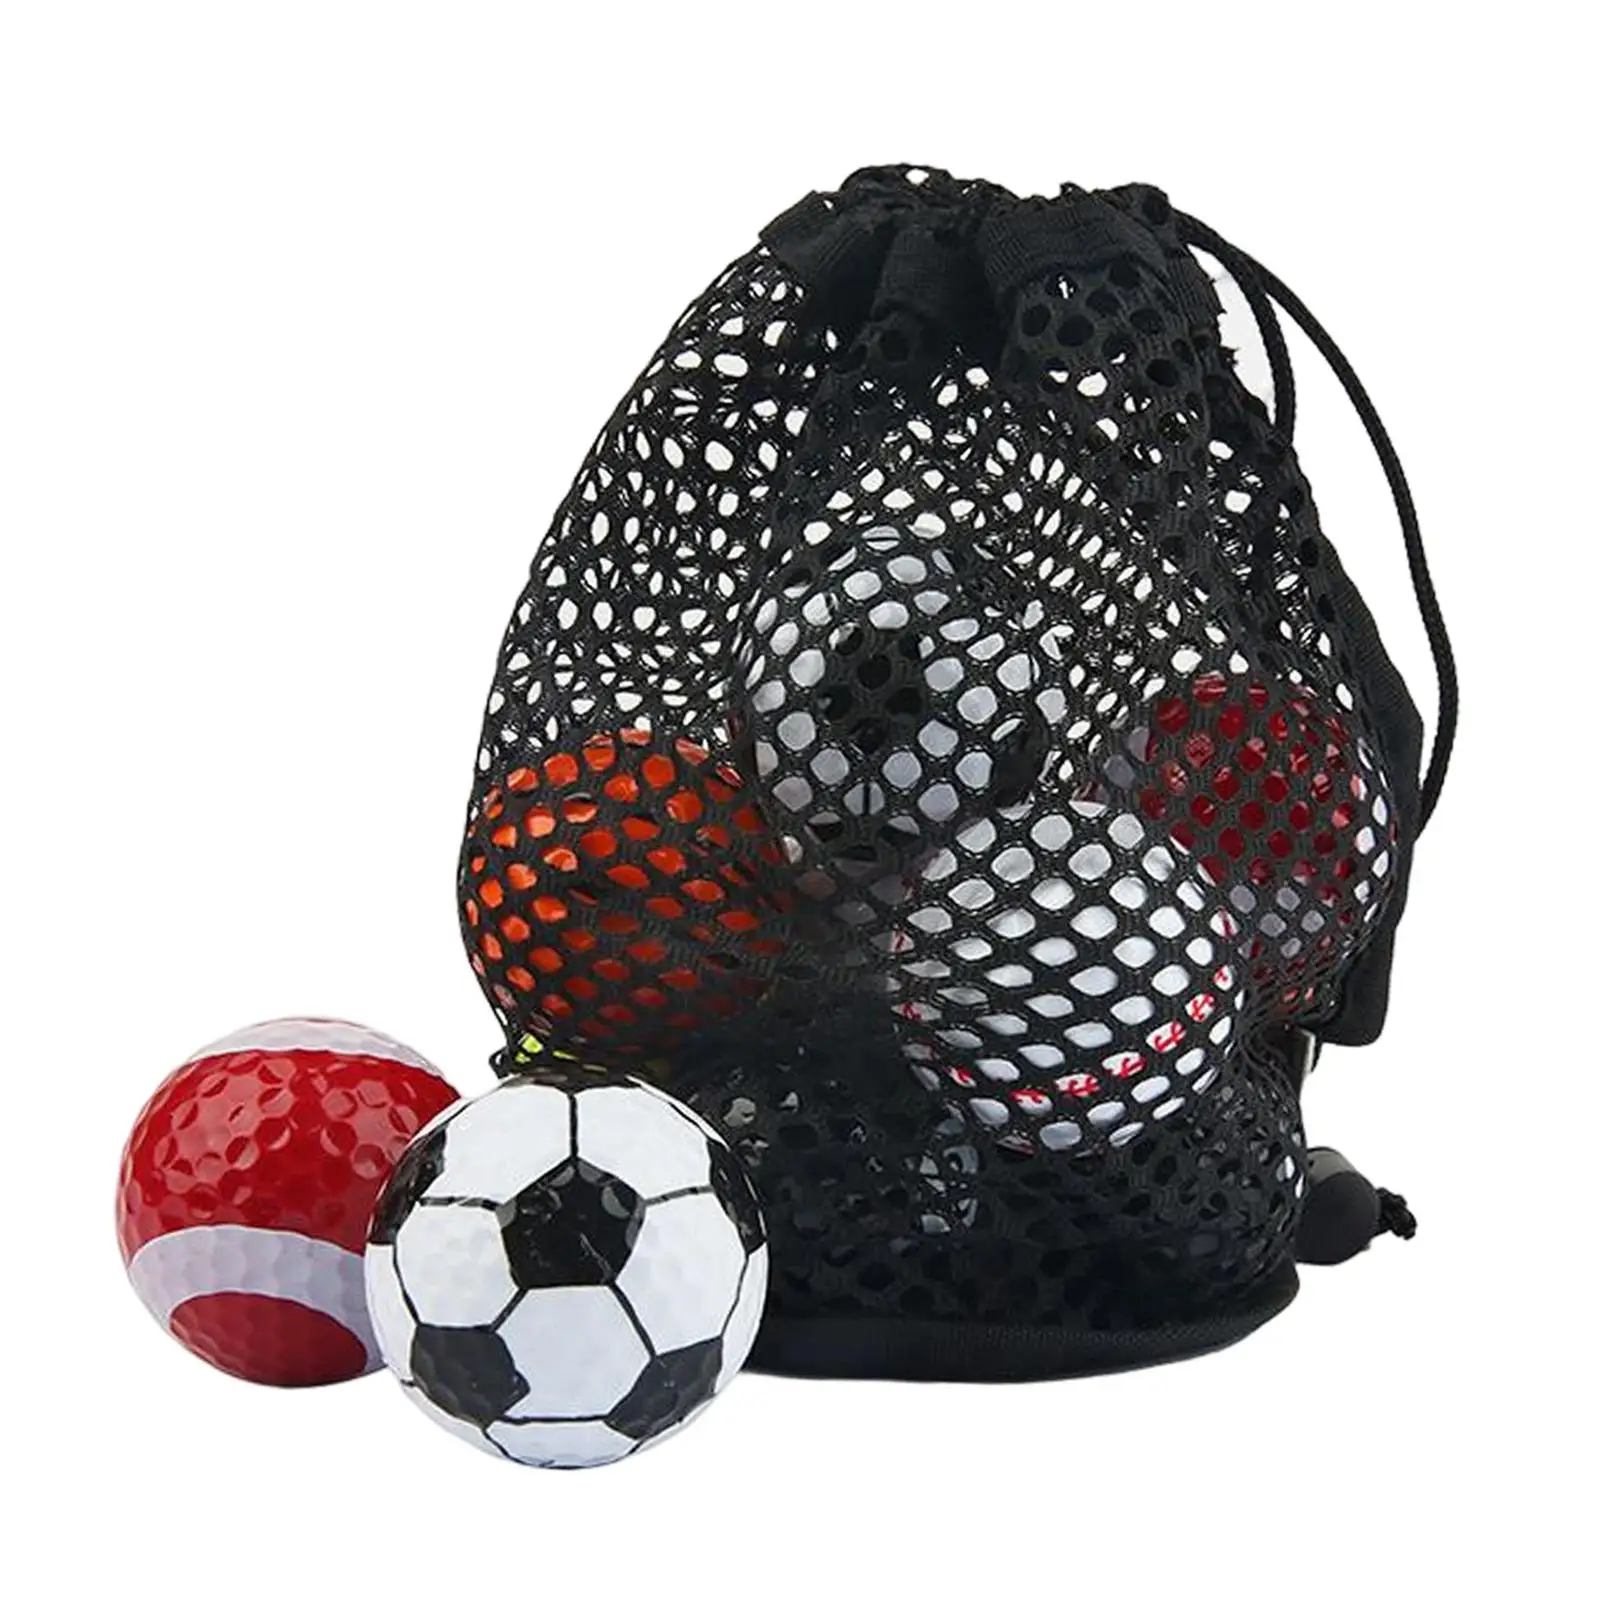 

Мяч для тренировок по гольфу 6x, мяч для игры в футбол, баскетбол, теннис, цветные новые мячи для игры в гольф для вождения